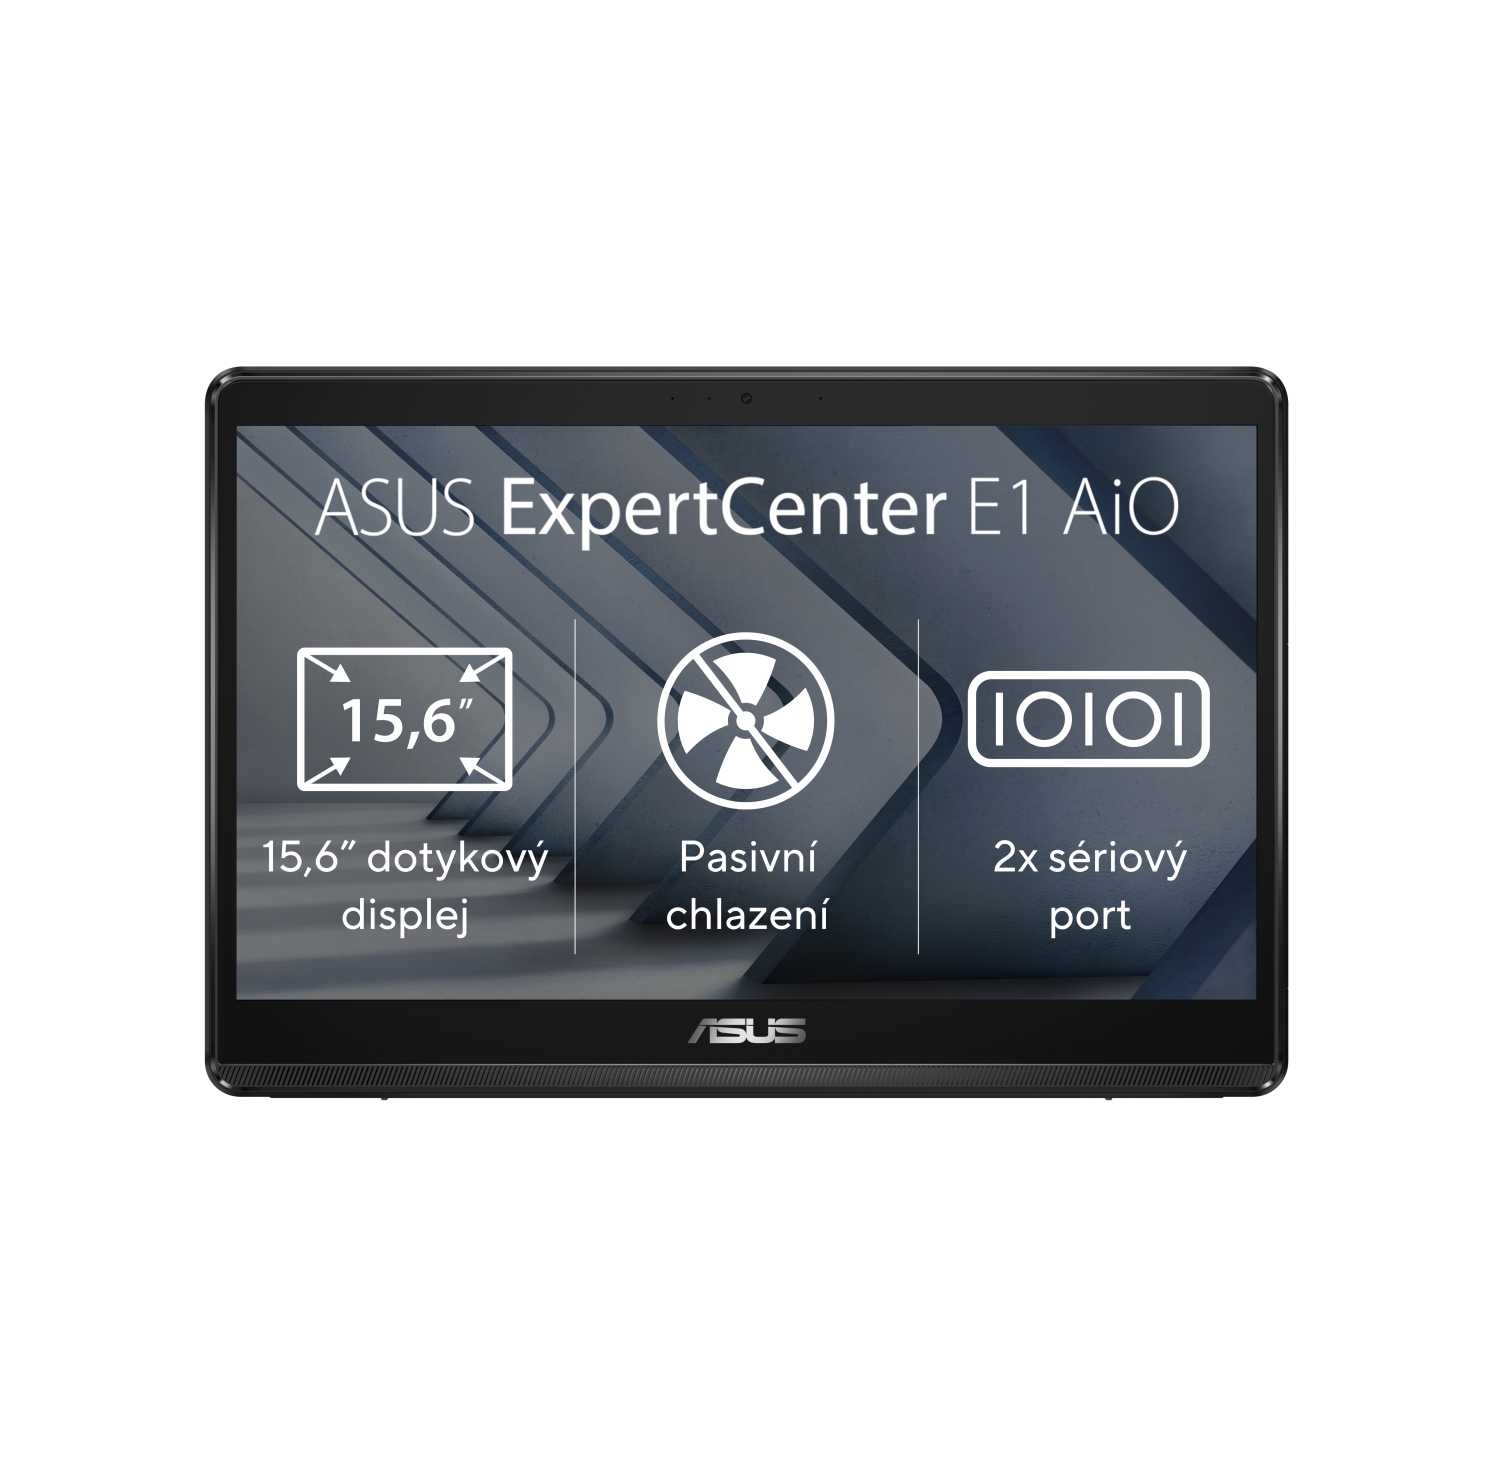 ASUS ExpertCenter/E1 AiO (E1600)/15,6